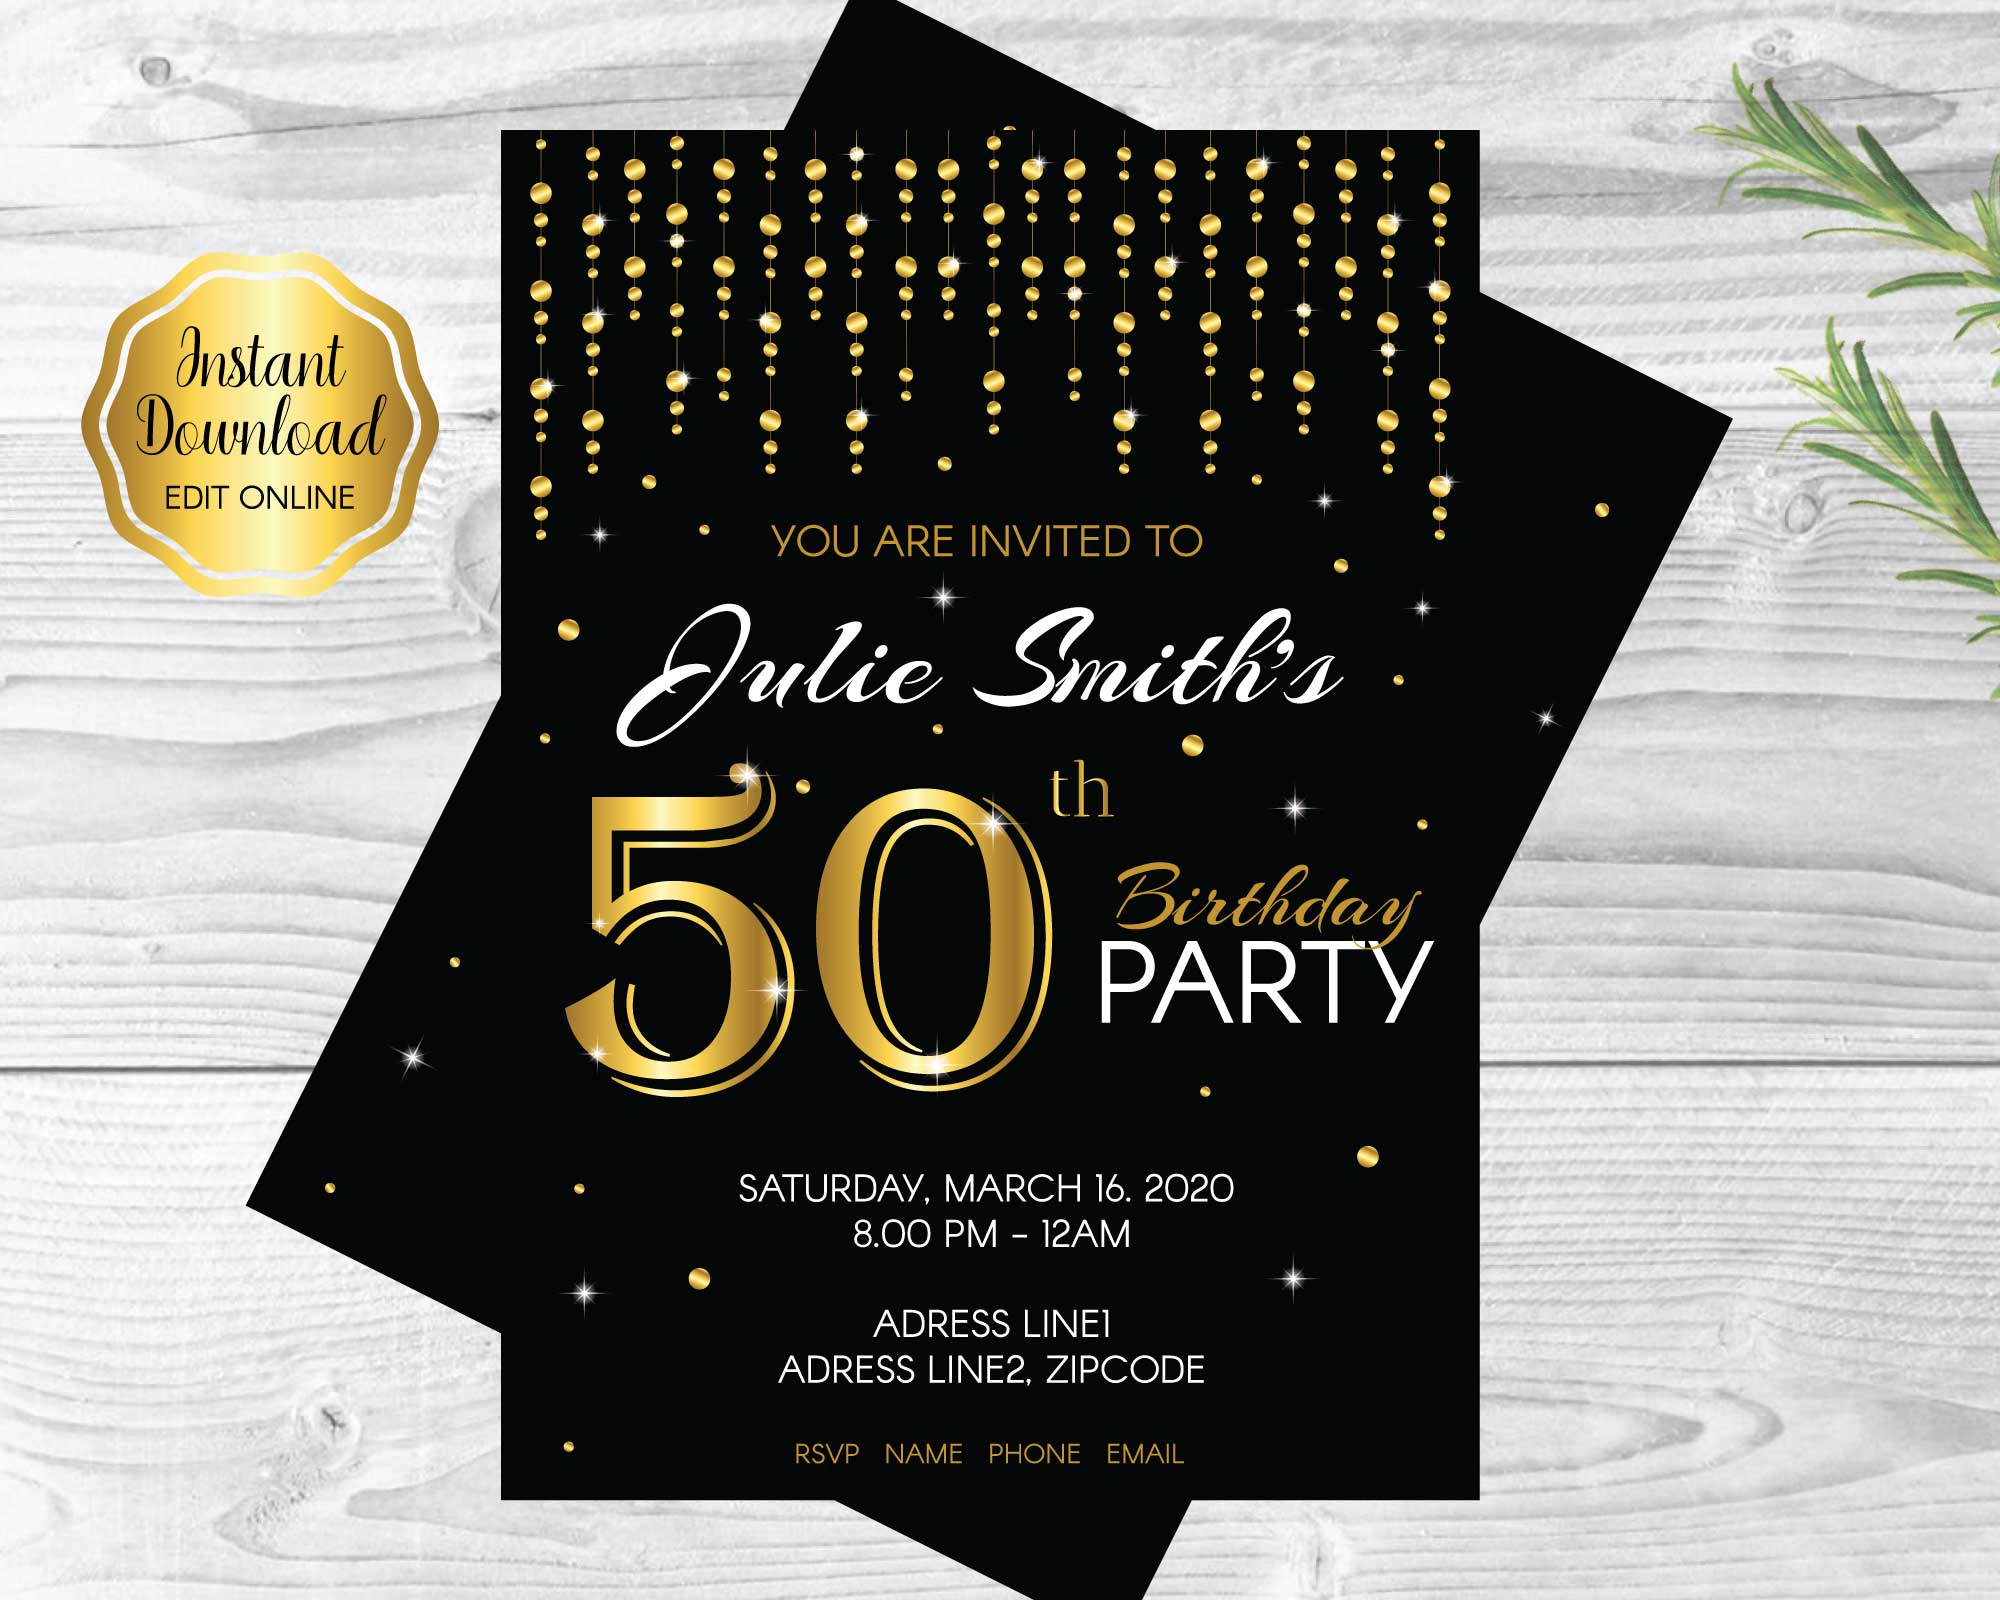 50th-birthday-party-invitation-classic-design-funtastic-idea